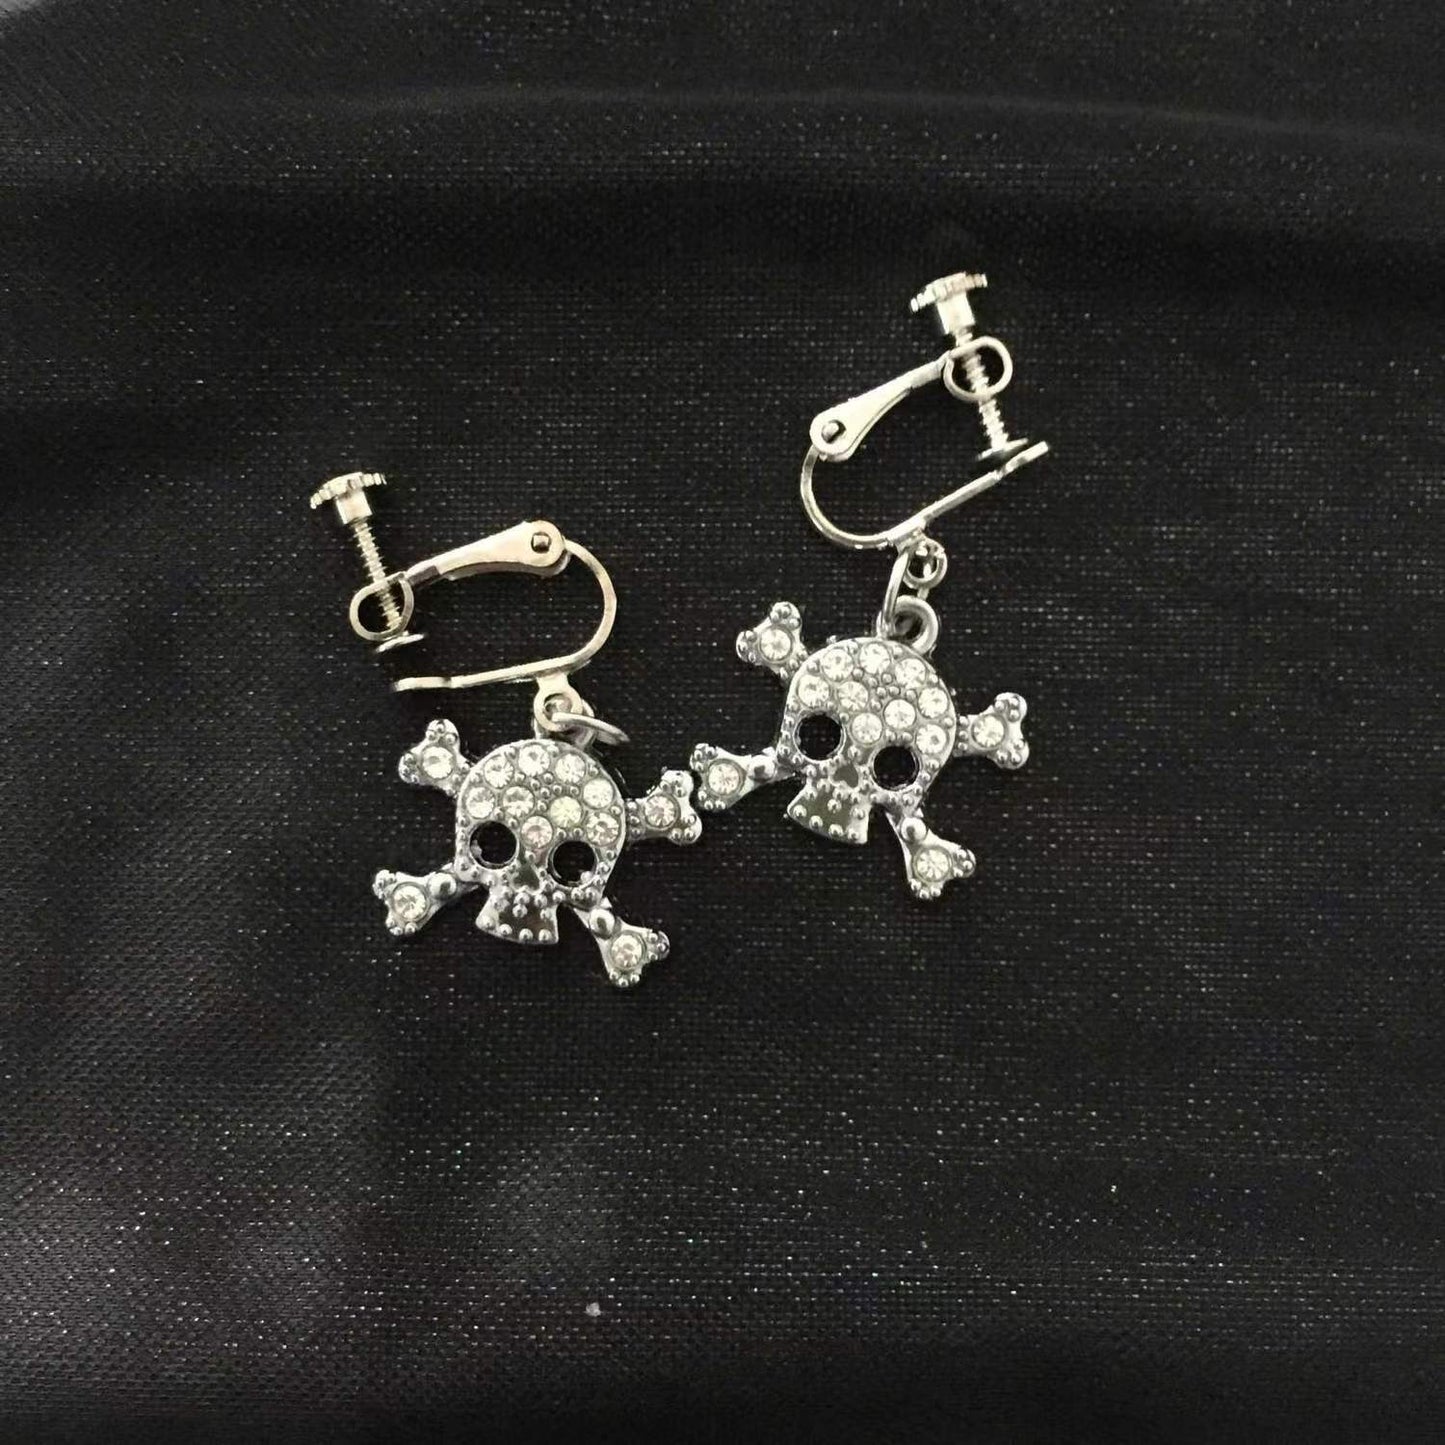 S925 silver skull earrings